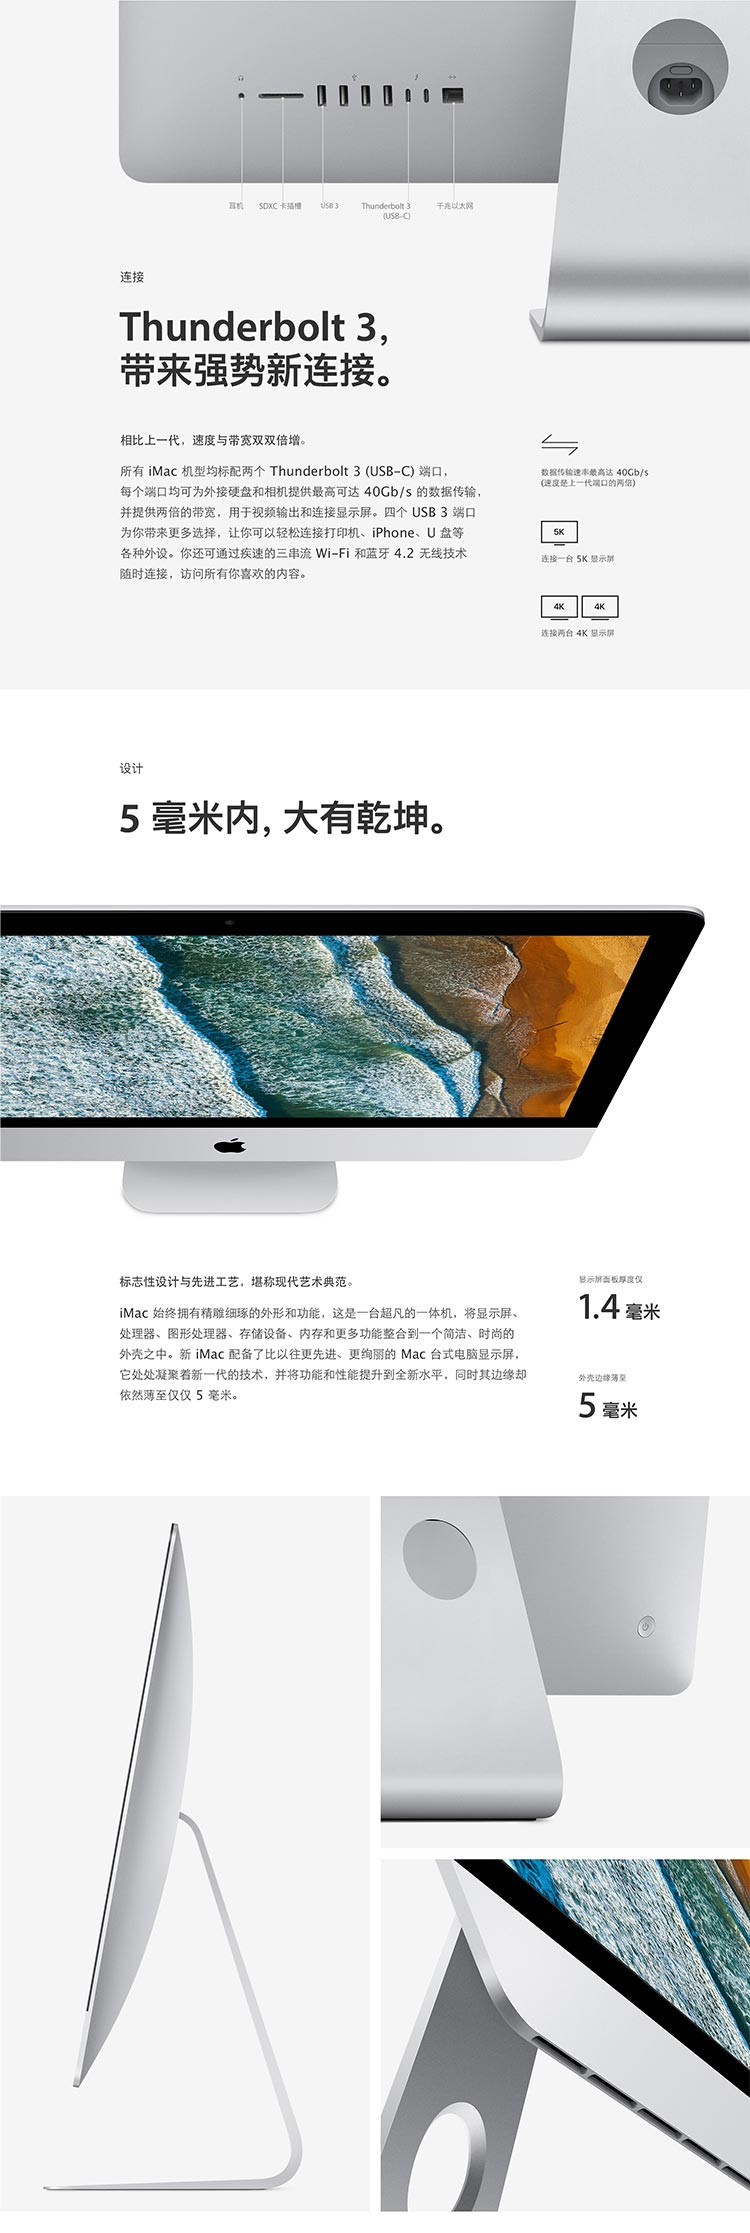 苹果 iMac 21.5英寸 i5-2.3G/8G/1T 一体机 MMQA2CH/A